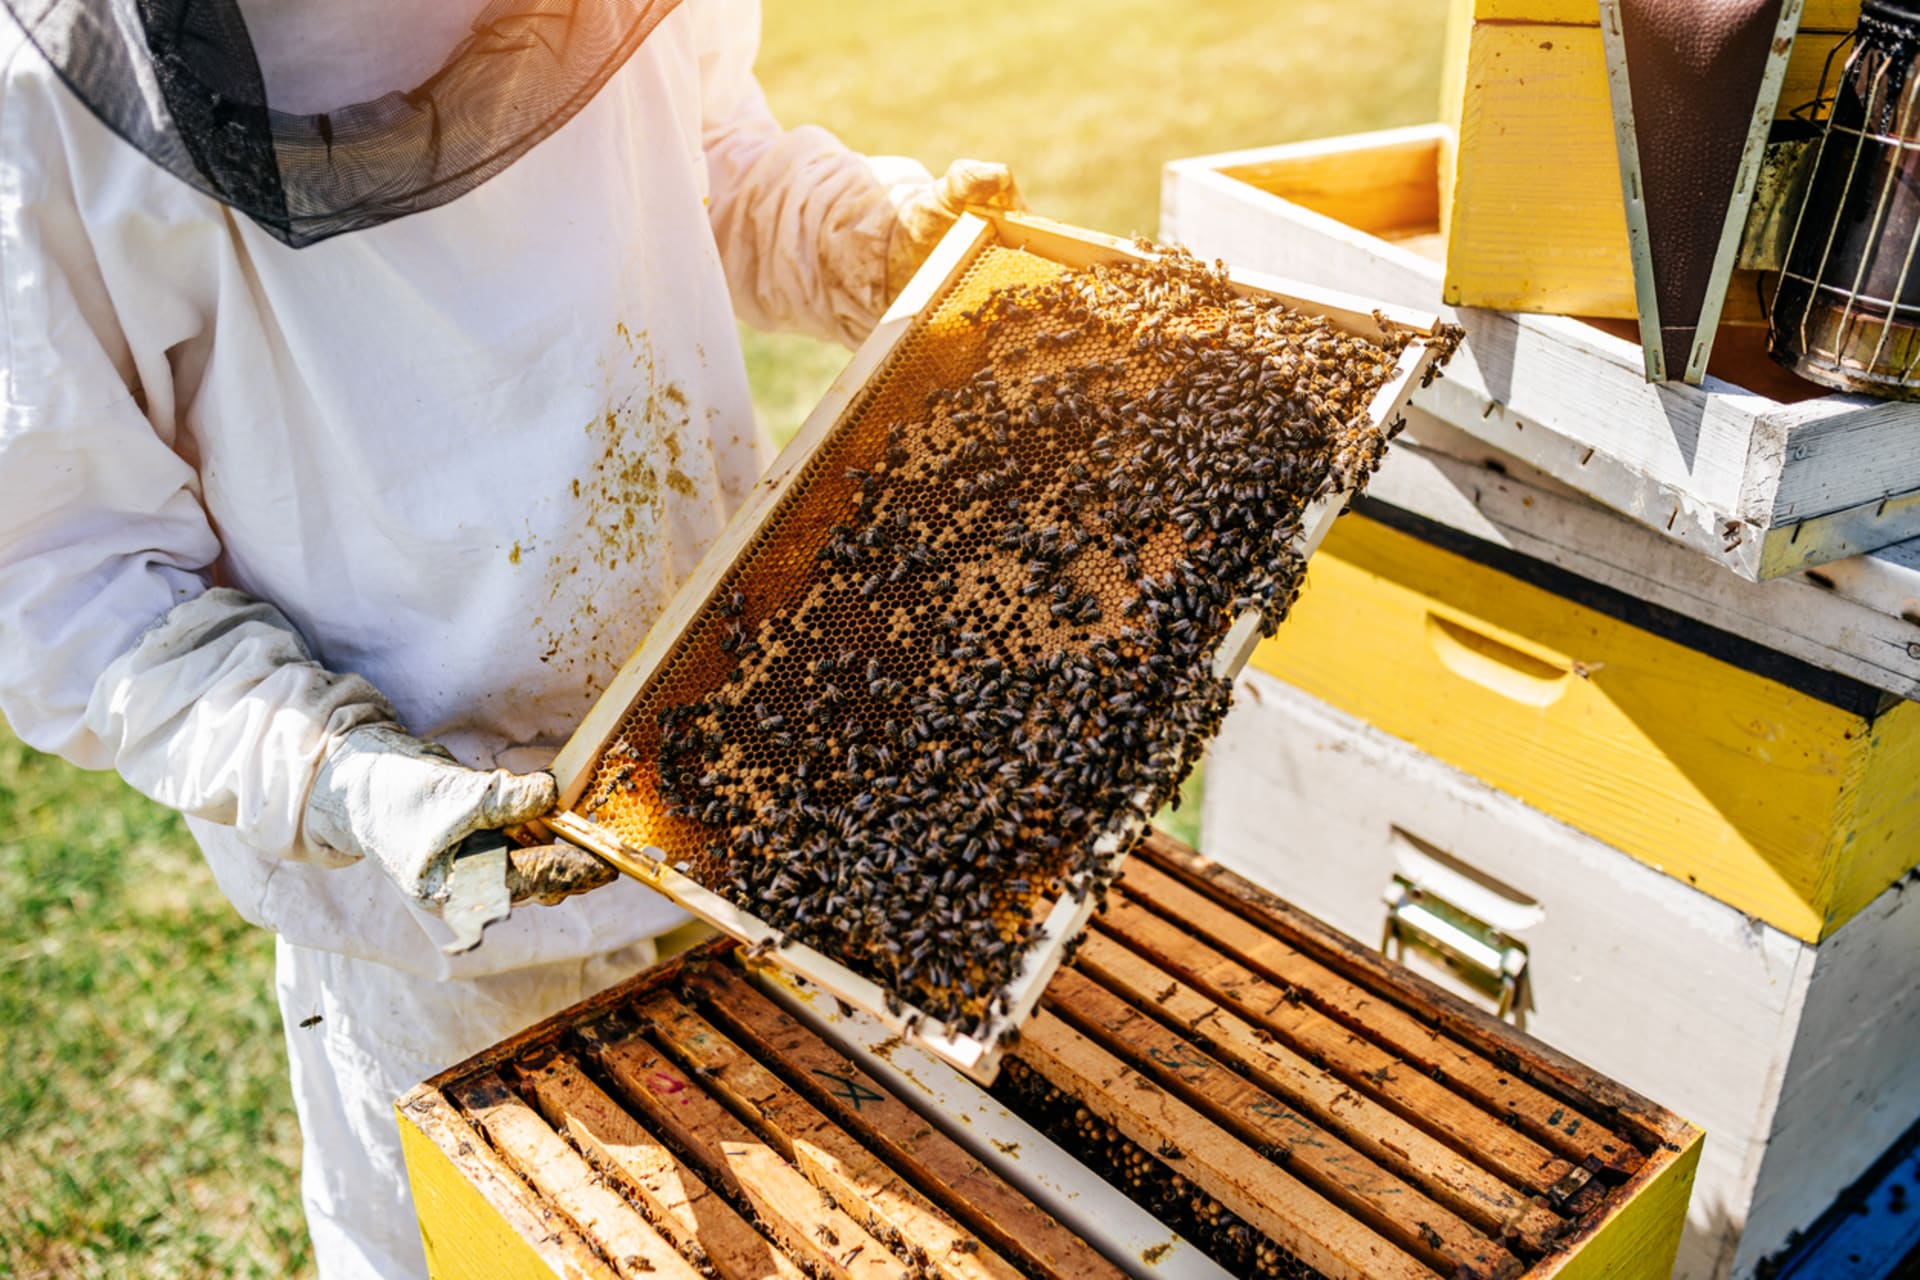 Včelařství se stále věnuje spousta lidí